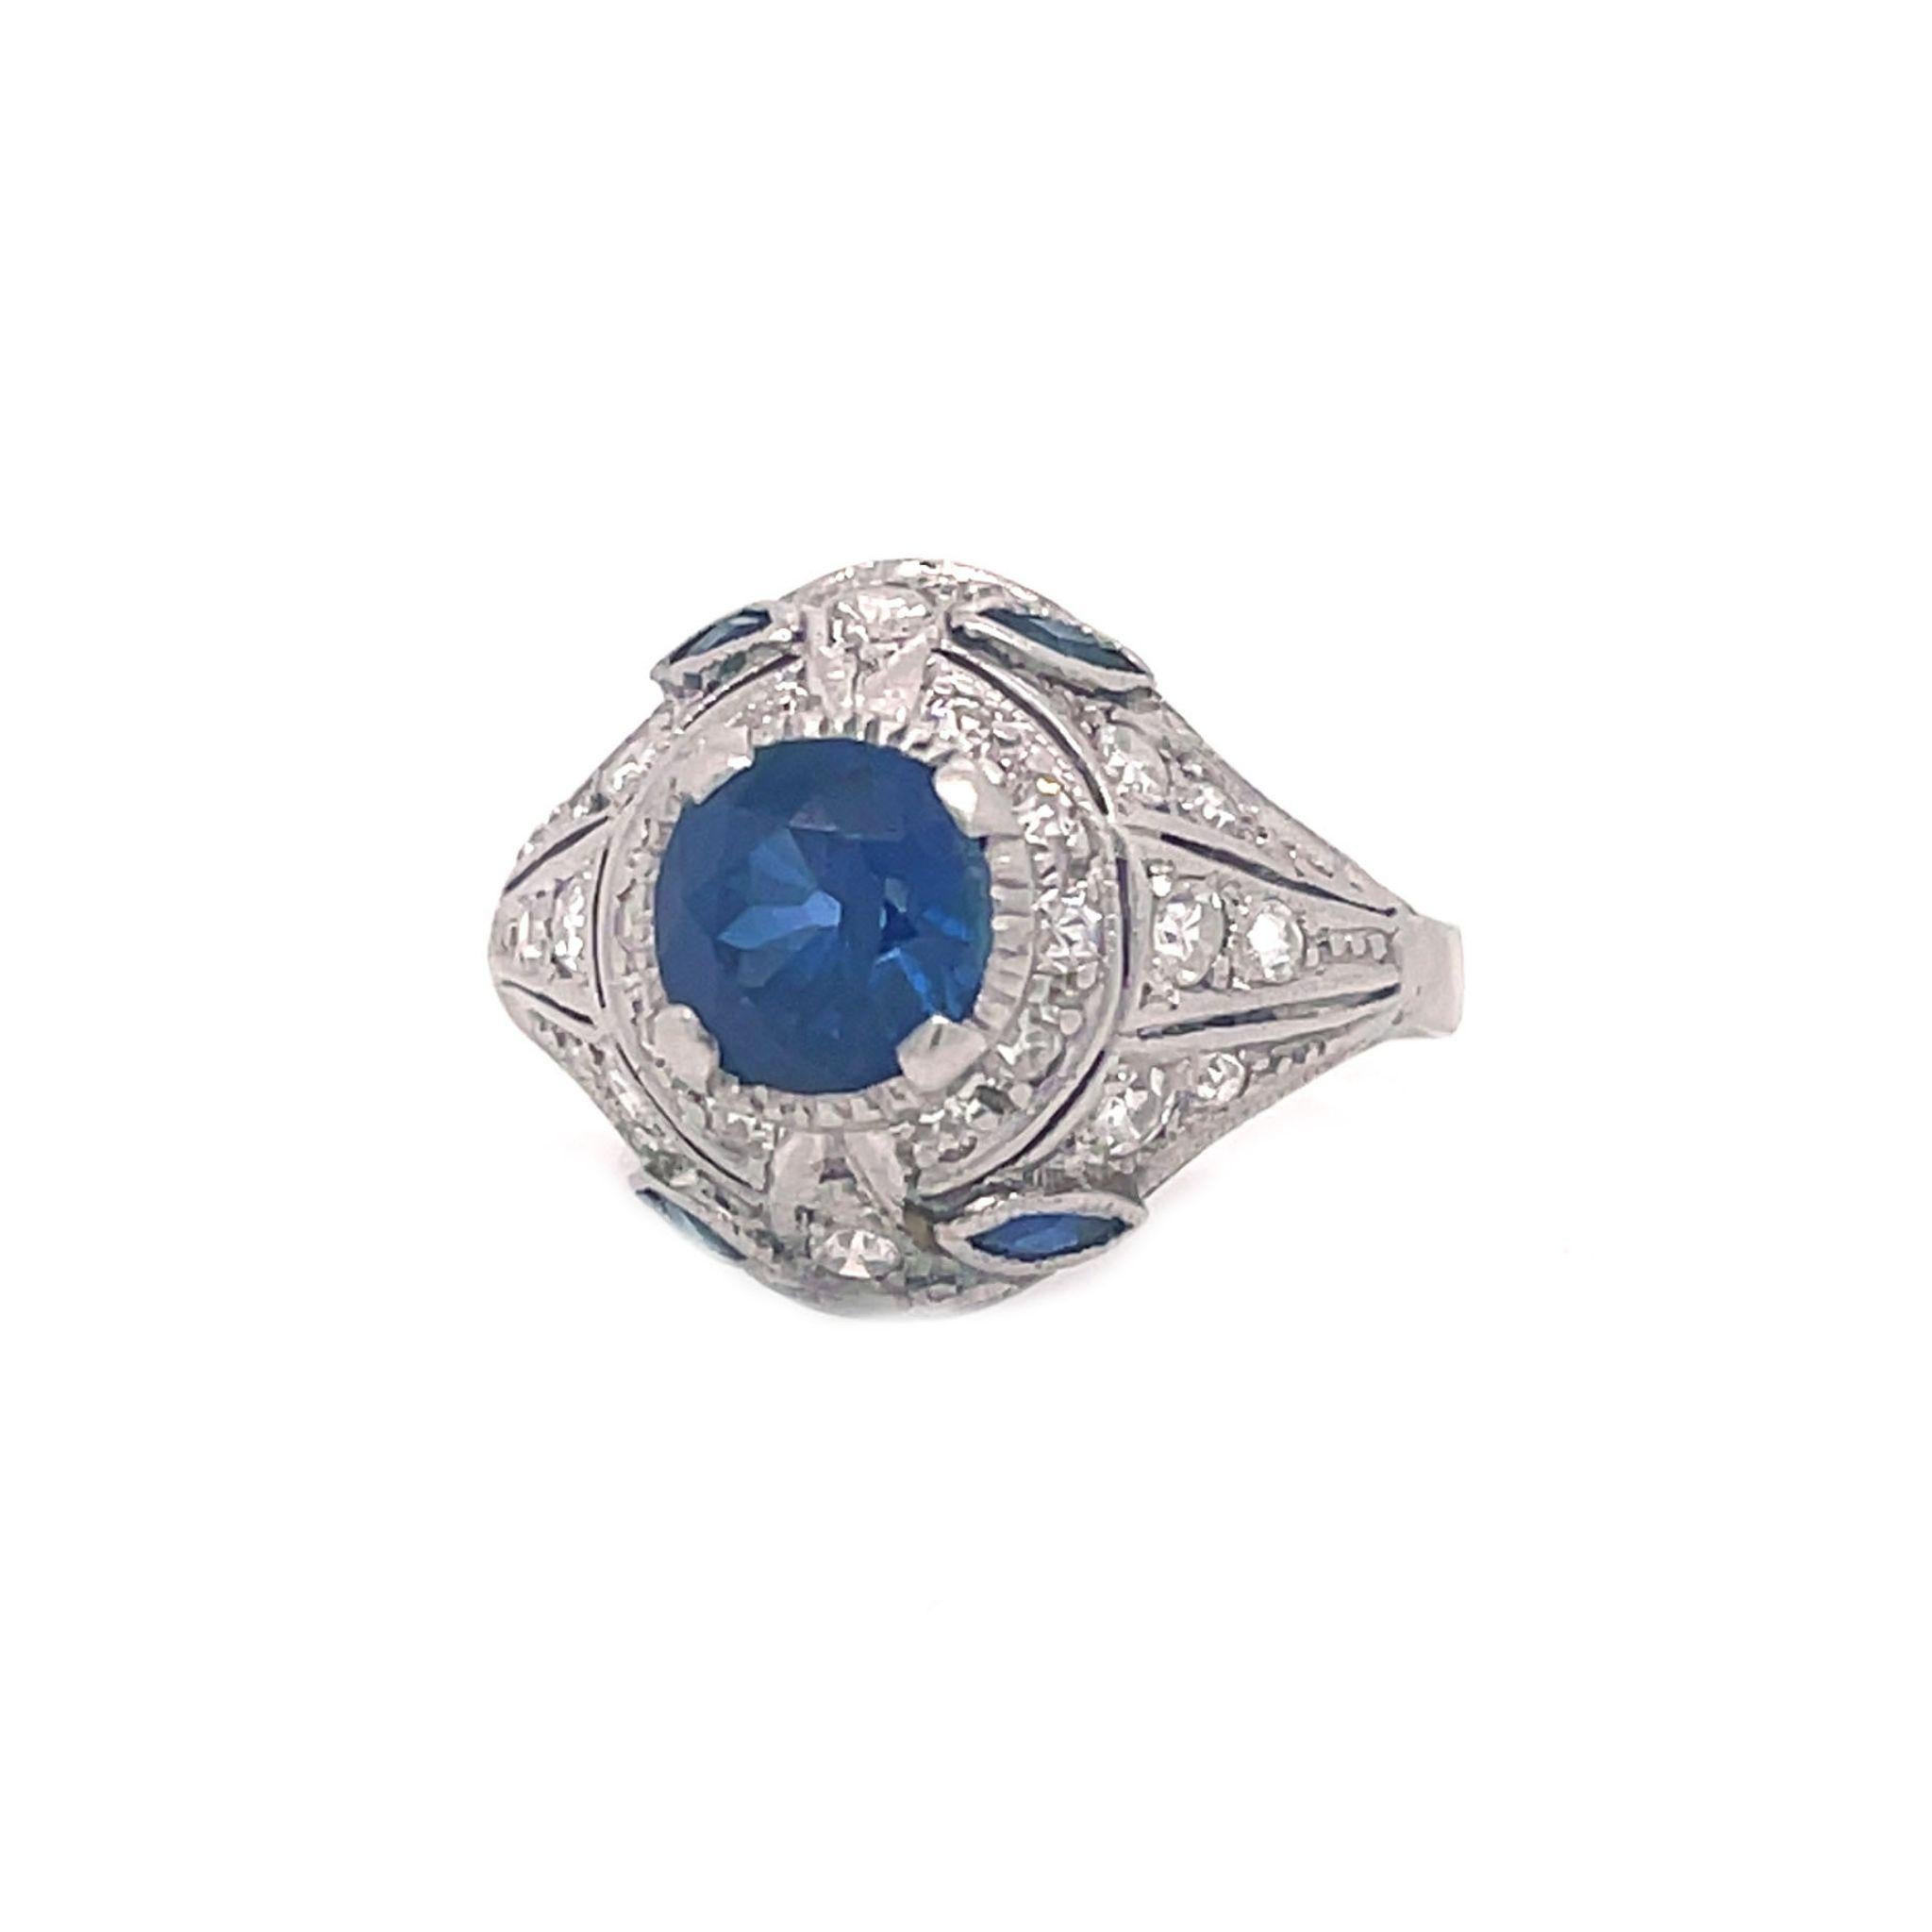 Dies ist ein absolut atemberaubender Art Deco Ring in Platin mit hell funkelnden Diamanten und einem satten blauen Saphir! Der Einfluss des Art déco ist in den dramatischen Linien und dem herrlichen Farbkontrast dieses Rings deutlich zu erkennen.